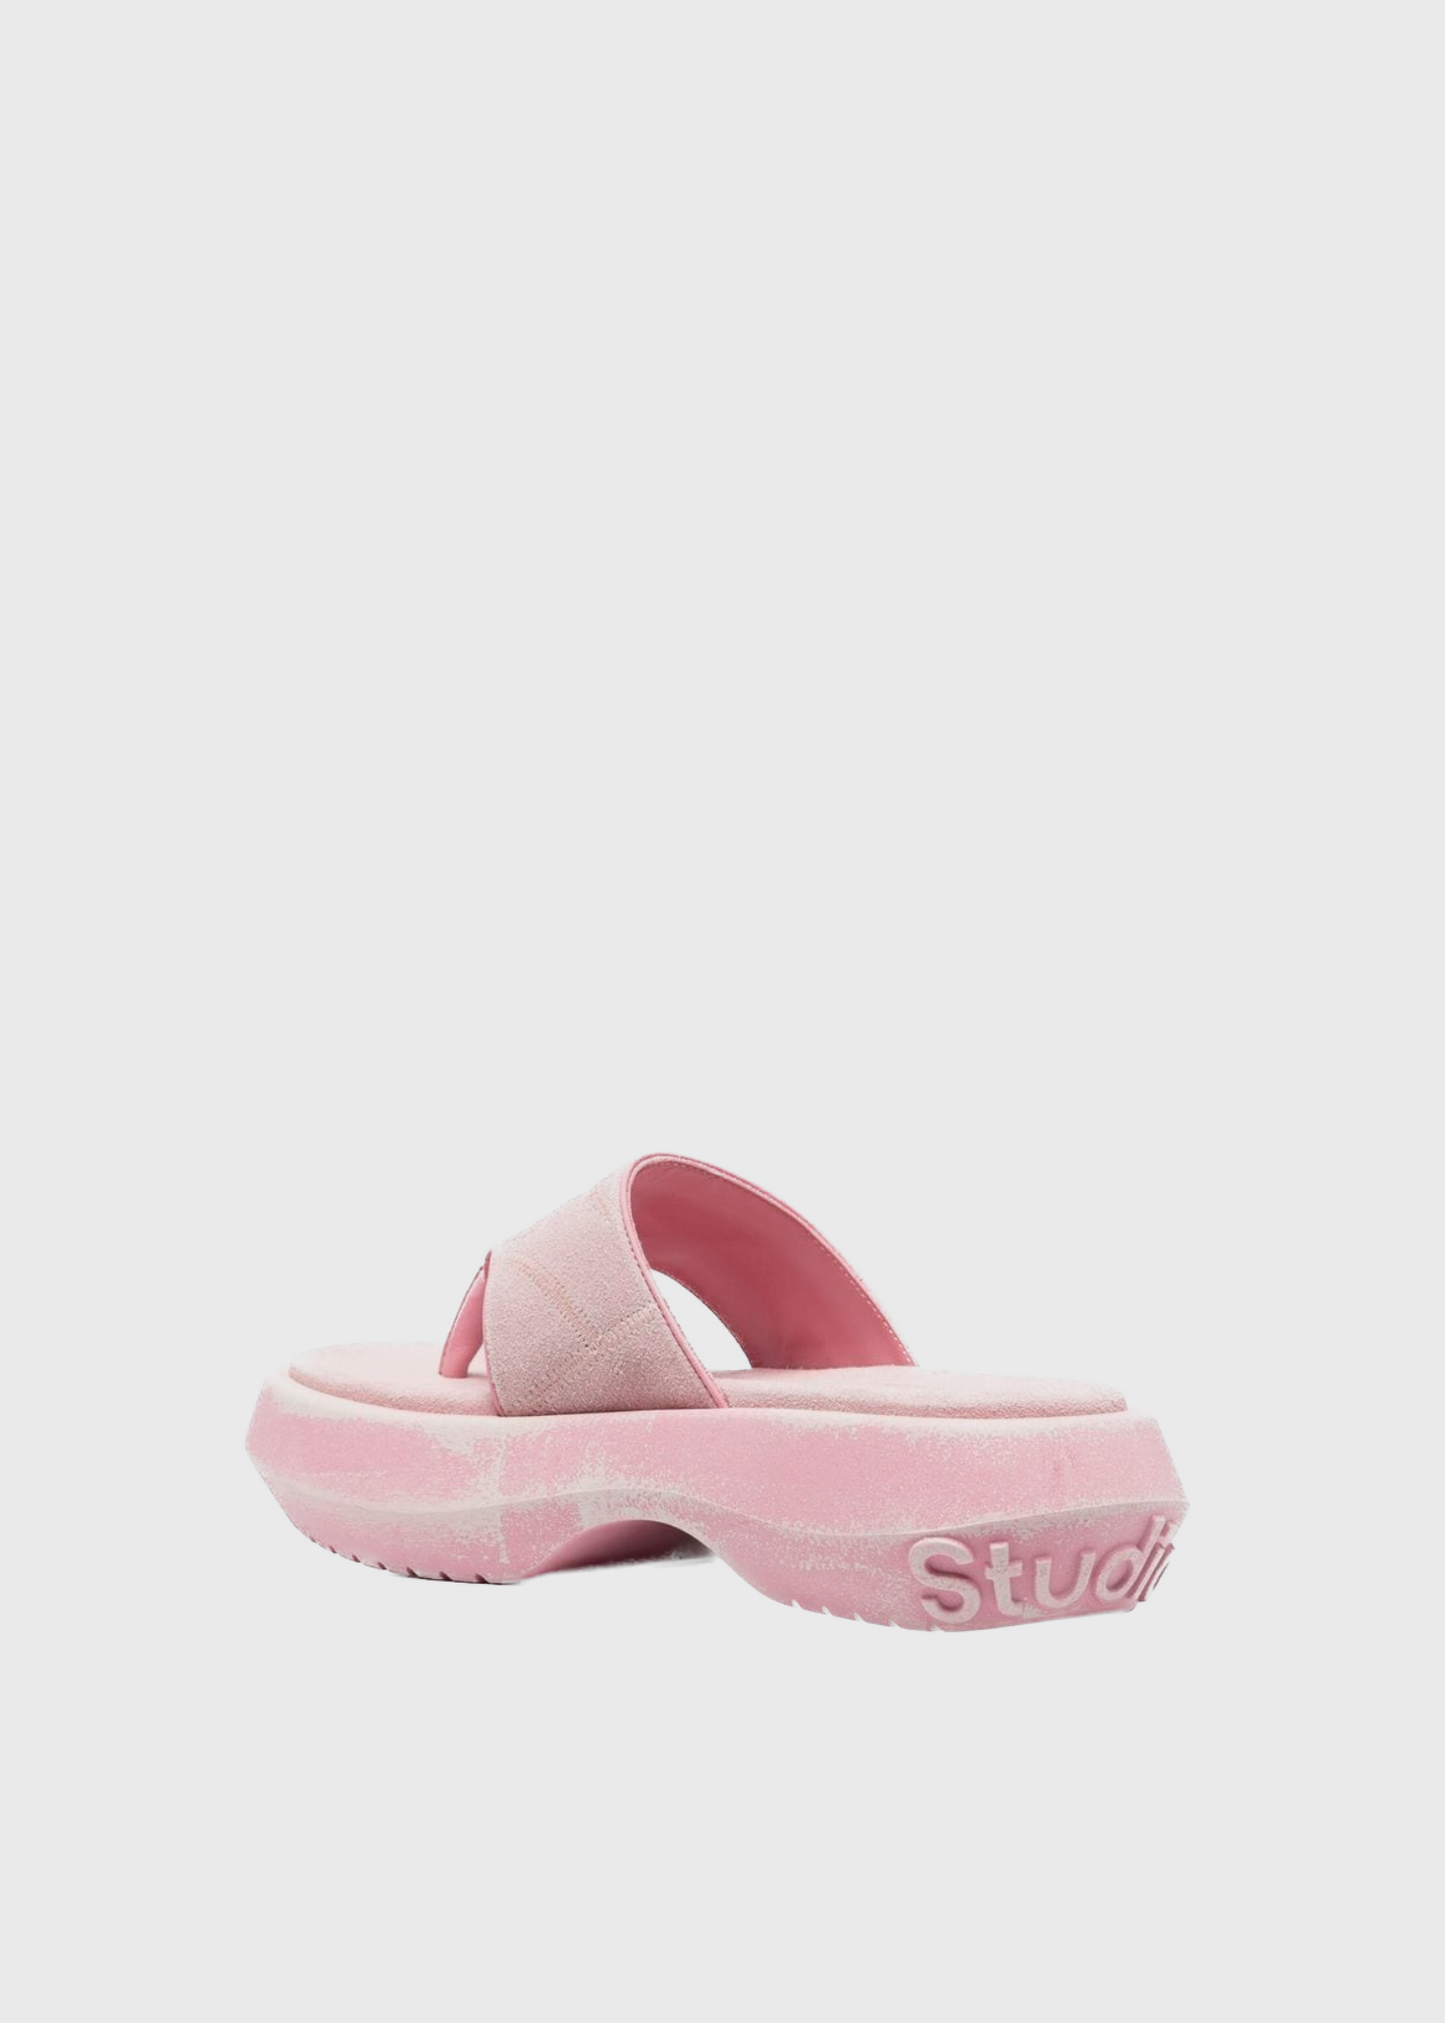 Leather sandals, blush pink, flip flops